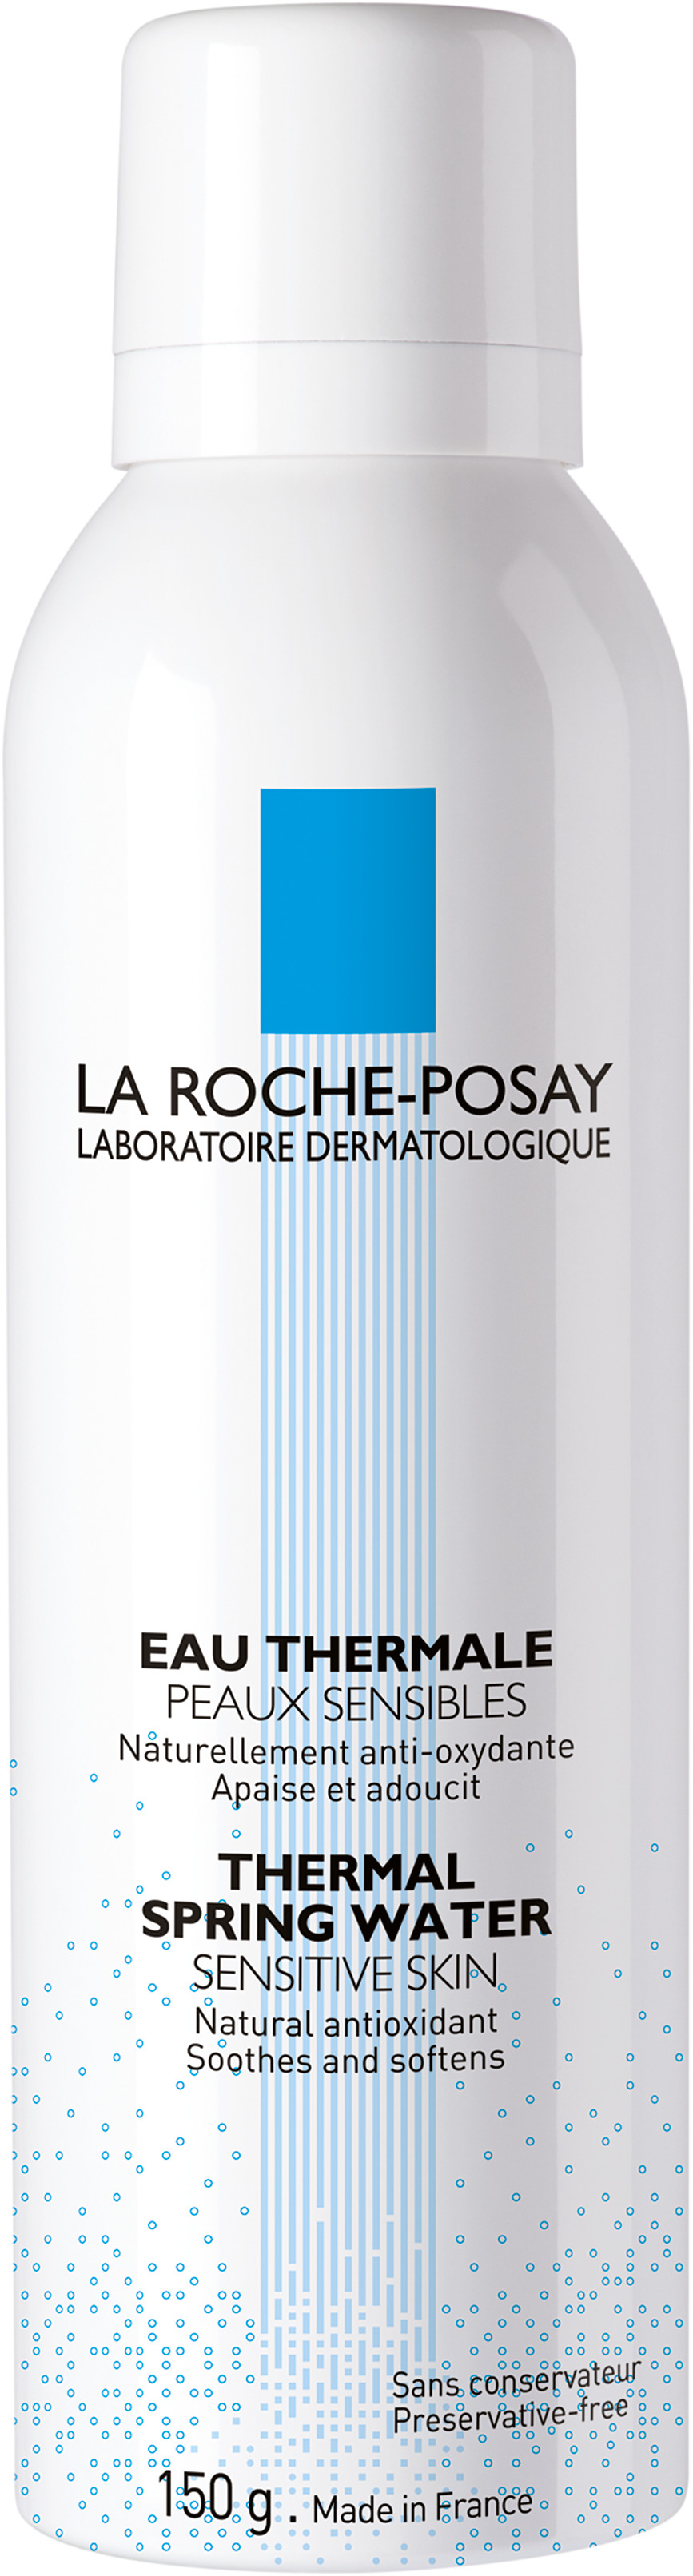 La Roche-Posay Eau Thermale Källvattenspray 150 ml